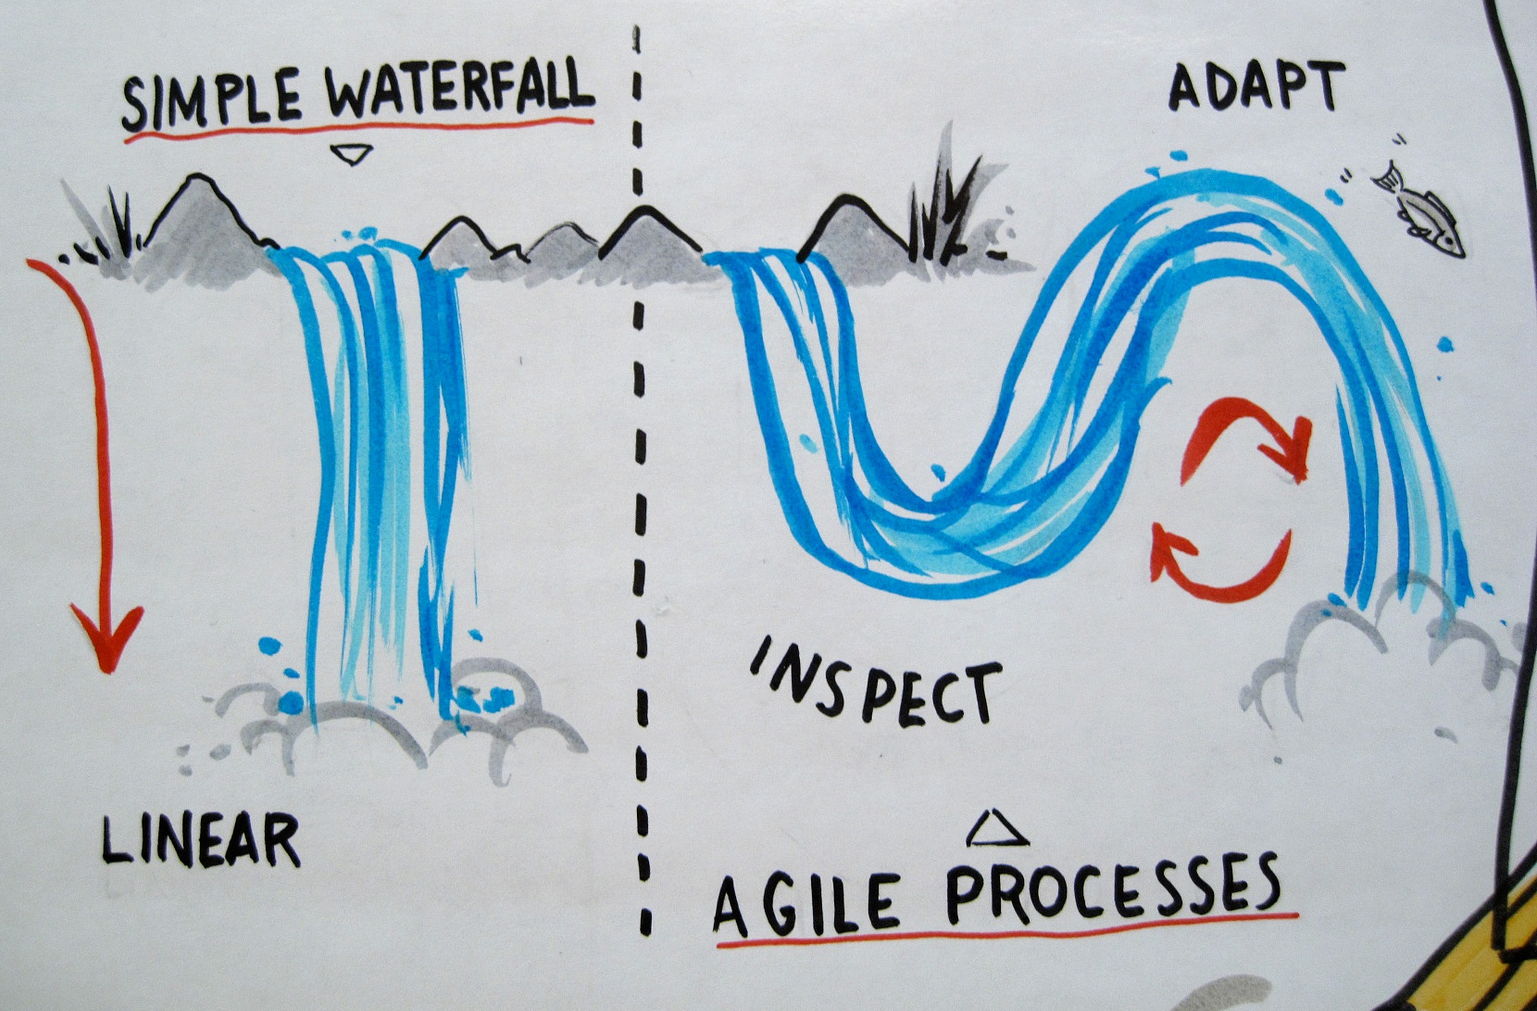 waterfall methodology vs agile